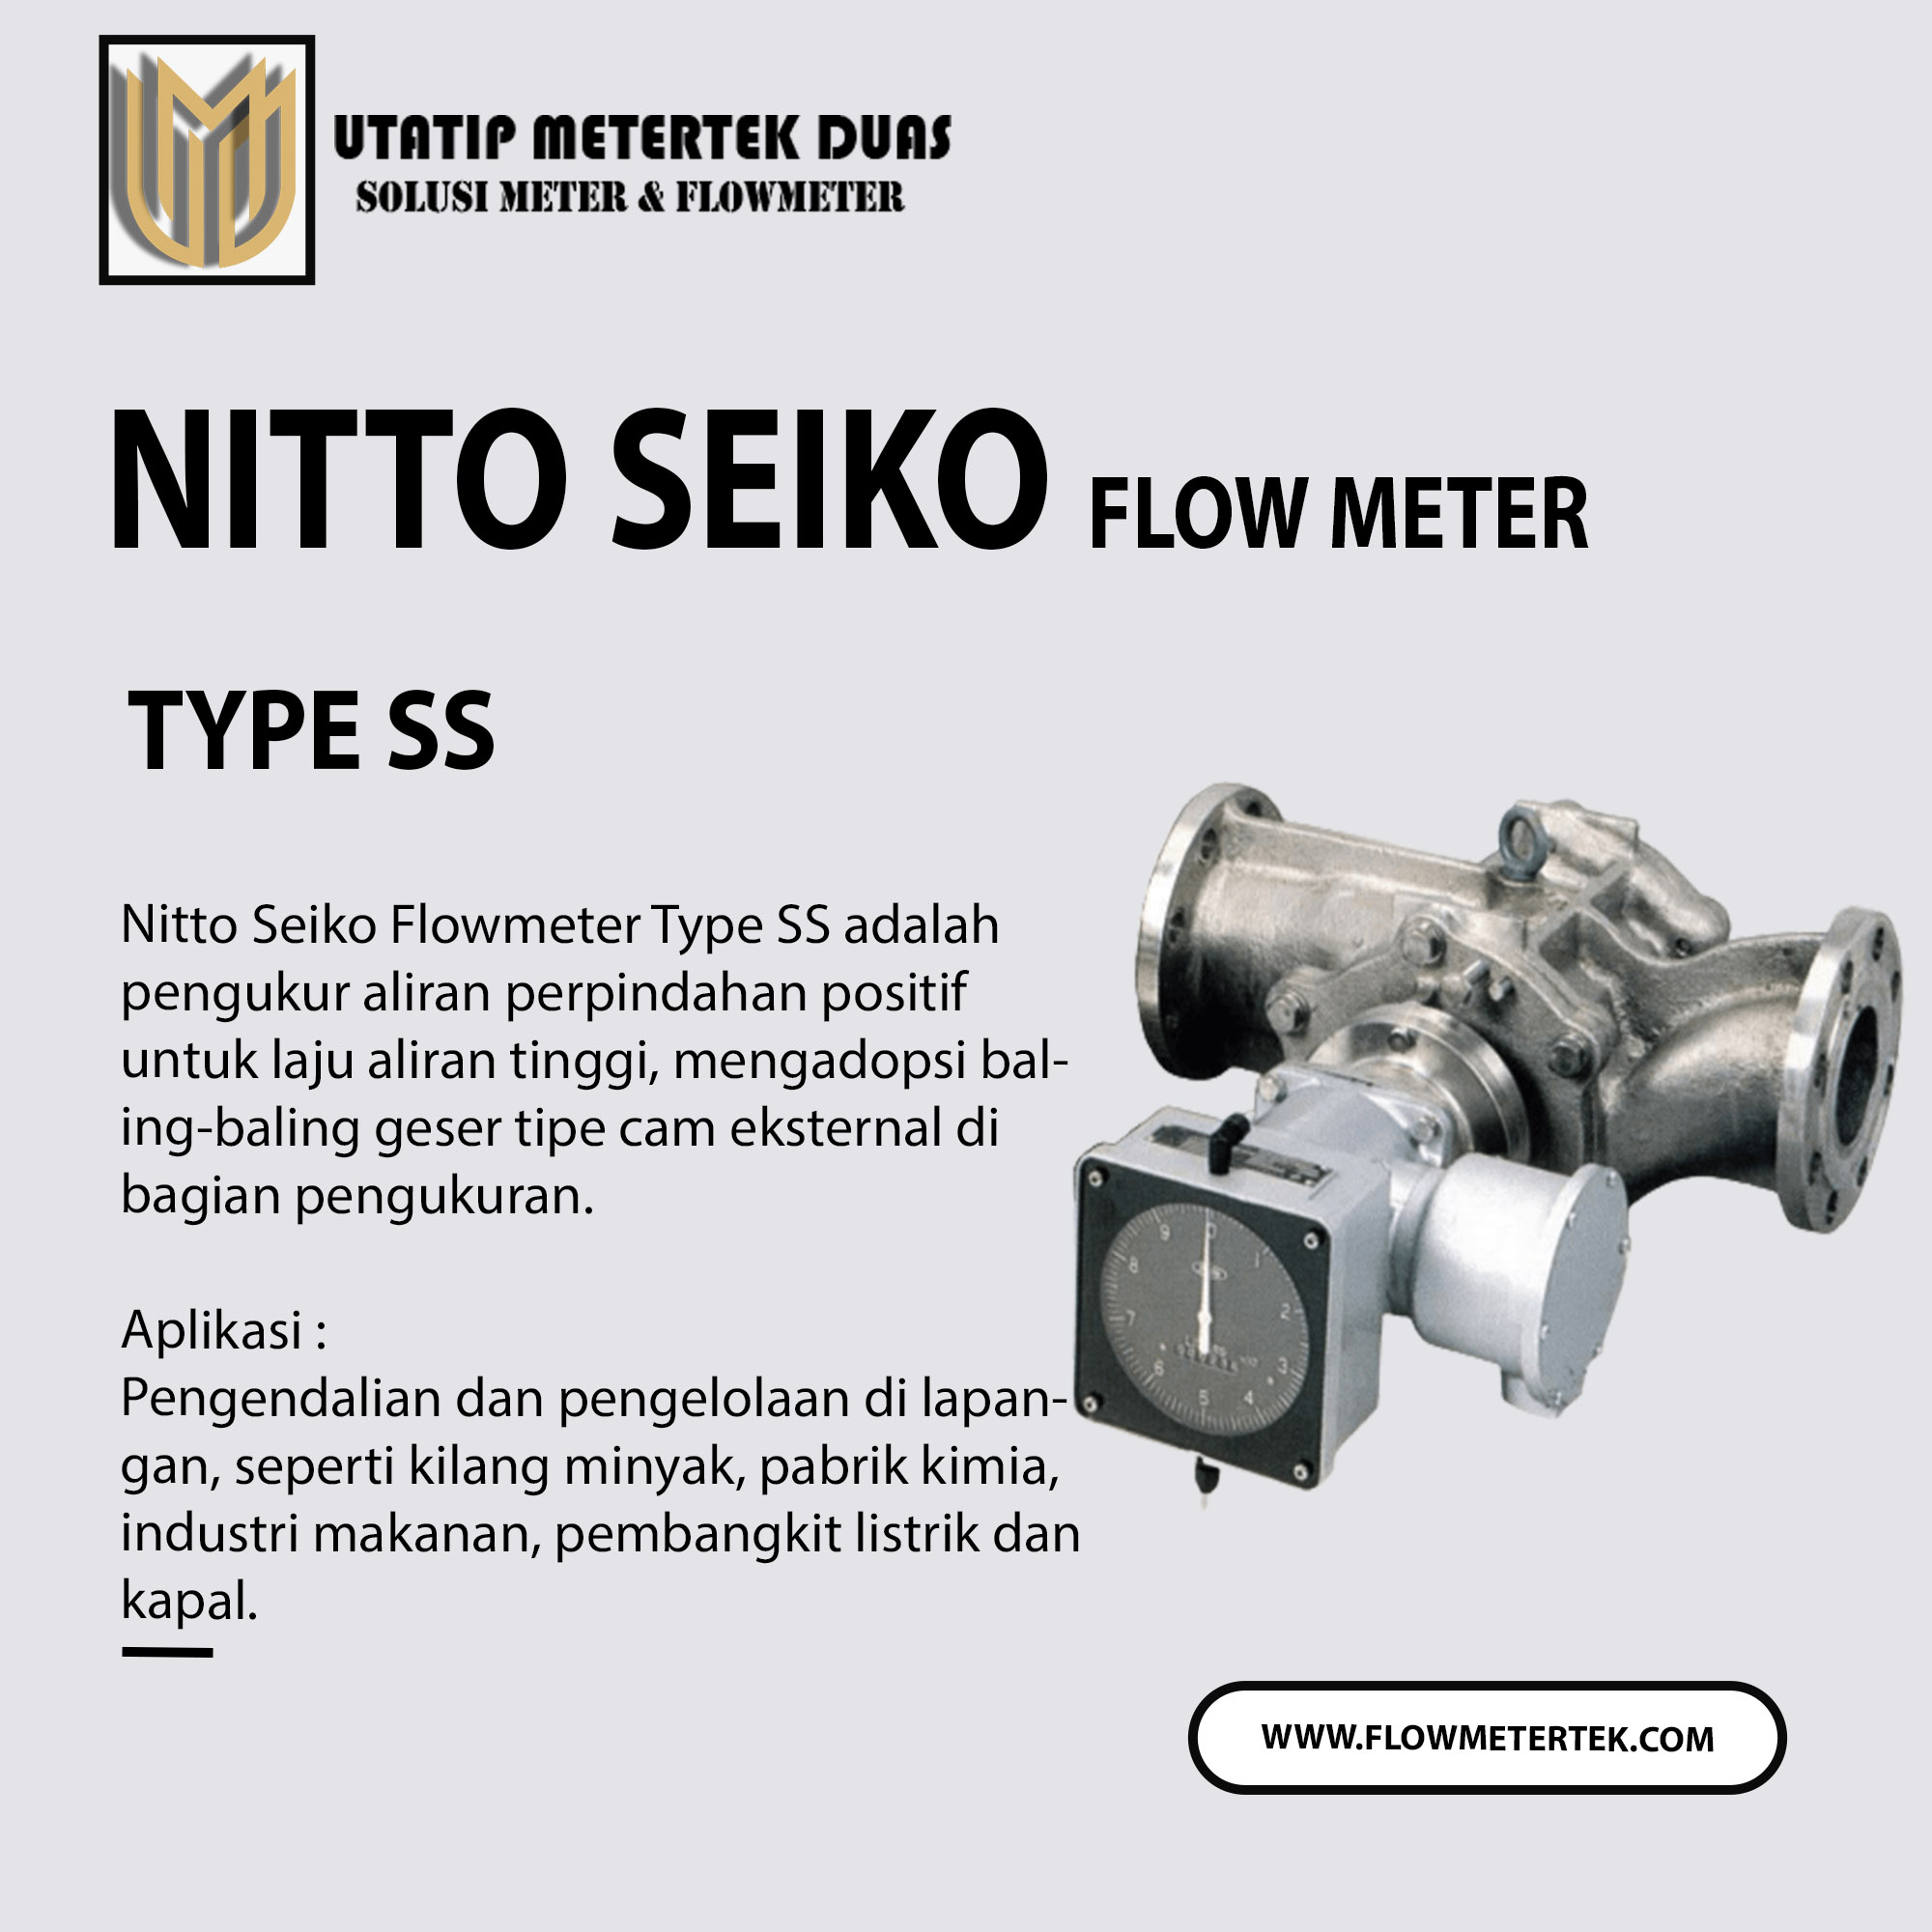 Nitto Seiko Flow Meter Type SS